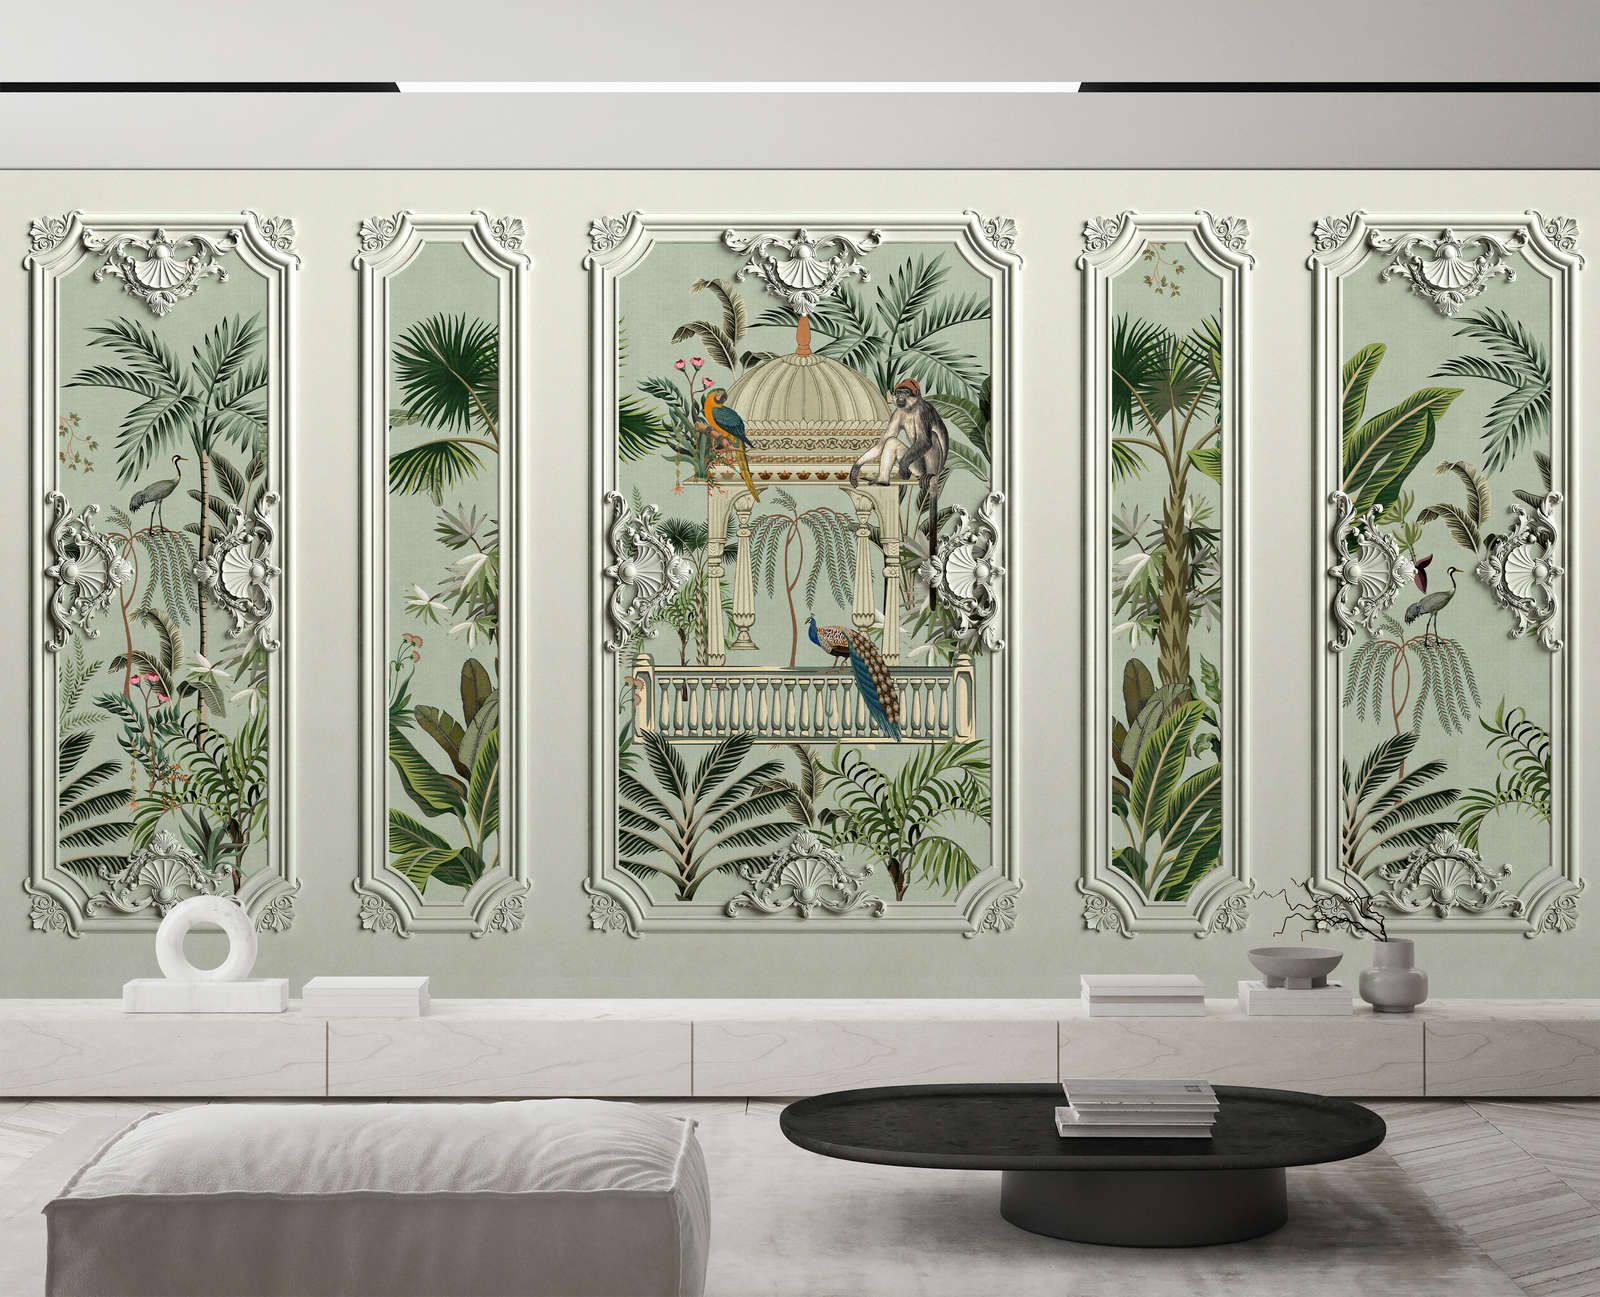             Fotomurali »darjeeling« - Cornice in stucco con uccelli e palme con texture in lino sullo sfondo - Materiali non tessuto premium liscio e leggermente lucido
        